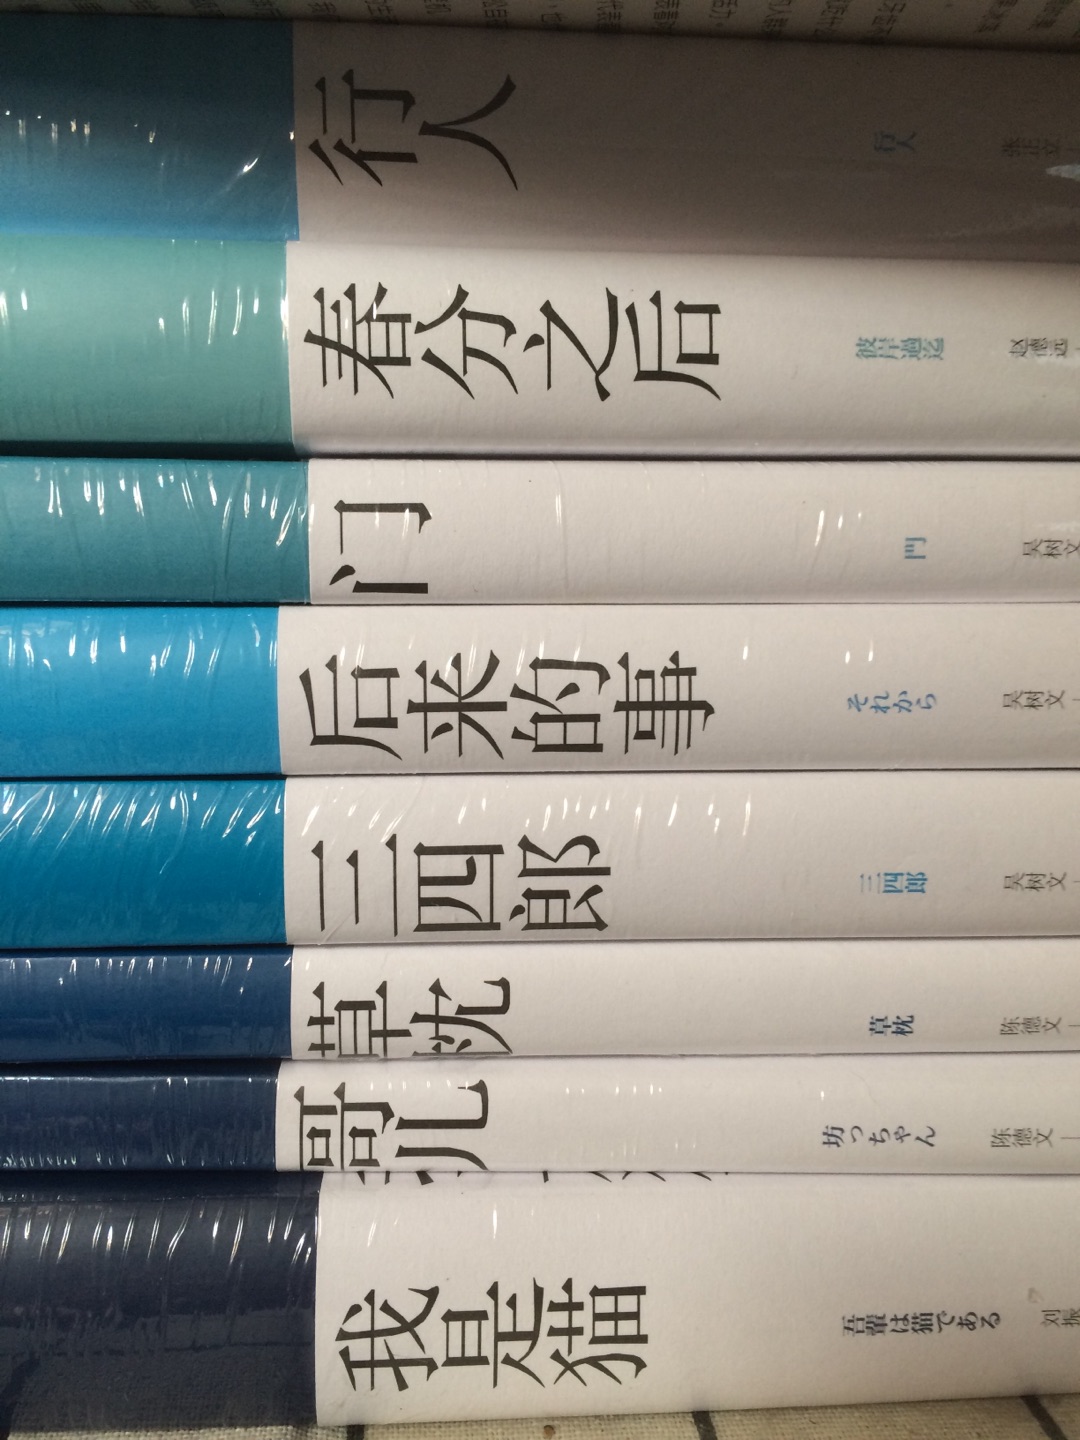 趁着618大促买了一波夏目漱石，书脊的颜色深浅是按照作品的时间先后顺序来拍的，很好玩儿呐。大师的书～